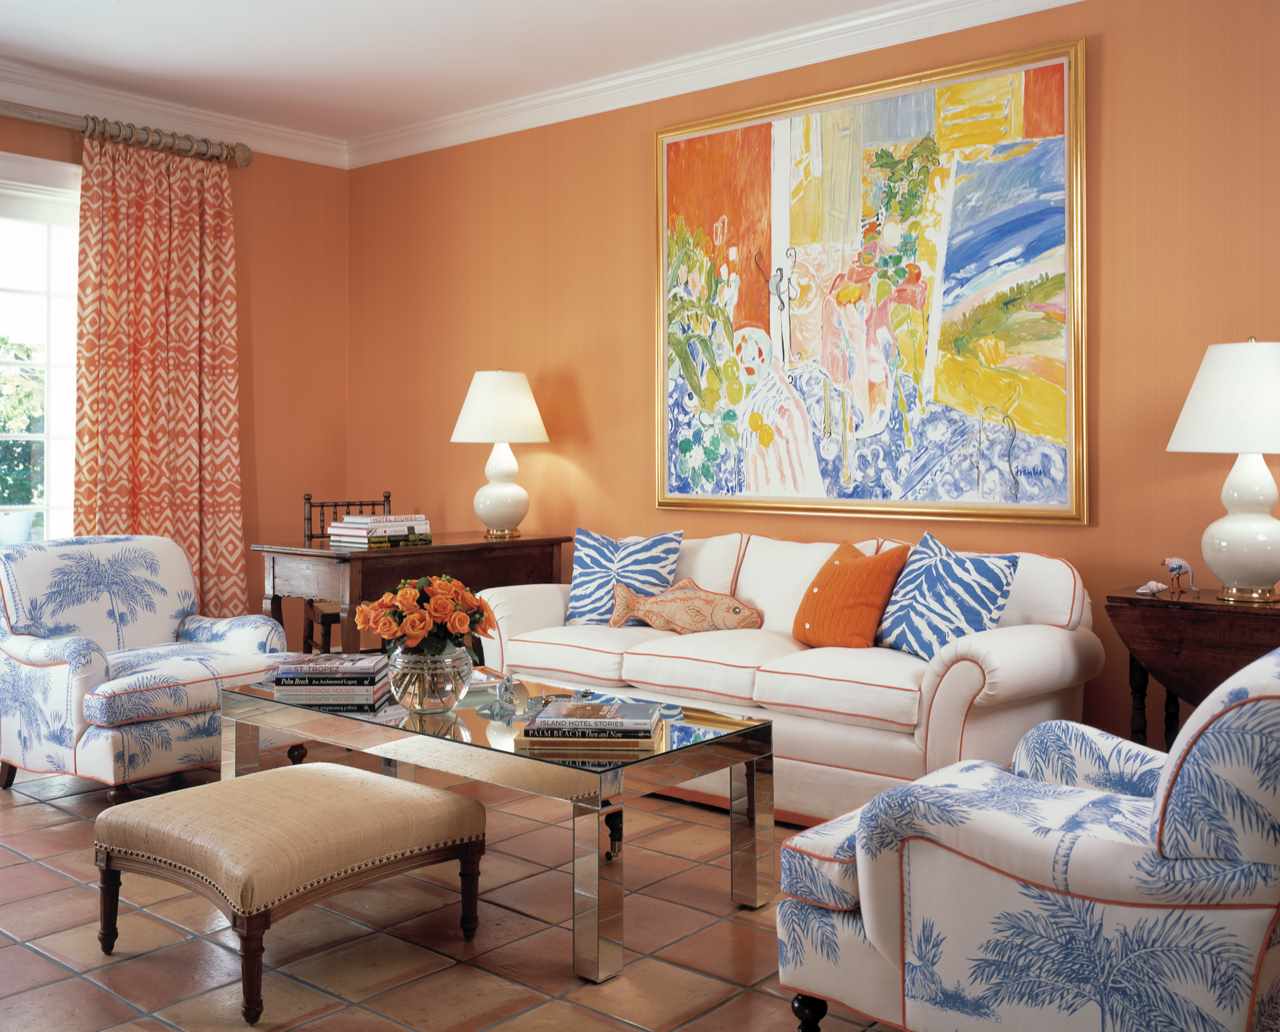 Spilgtas persiku krāsas kombinācijas piemērs dzīvokļa dizainā